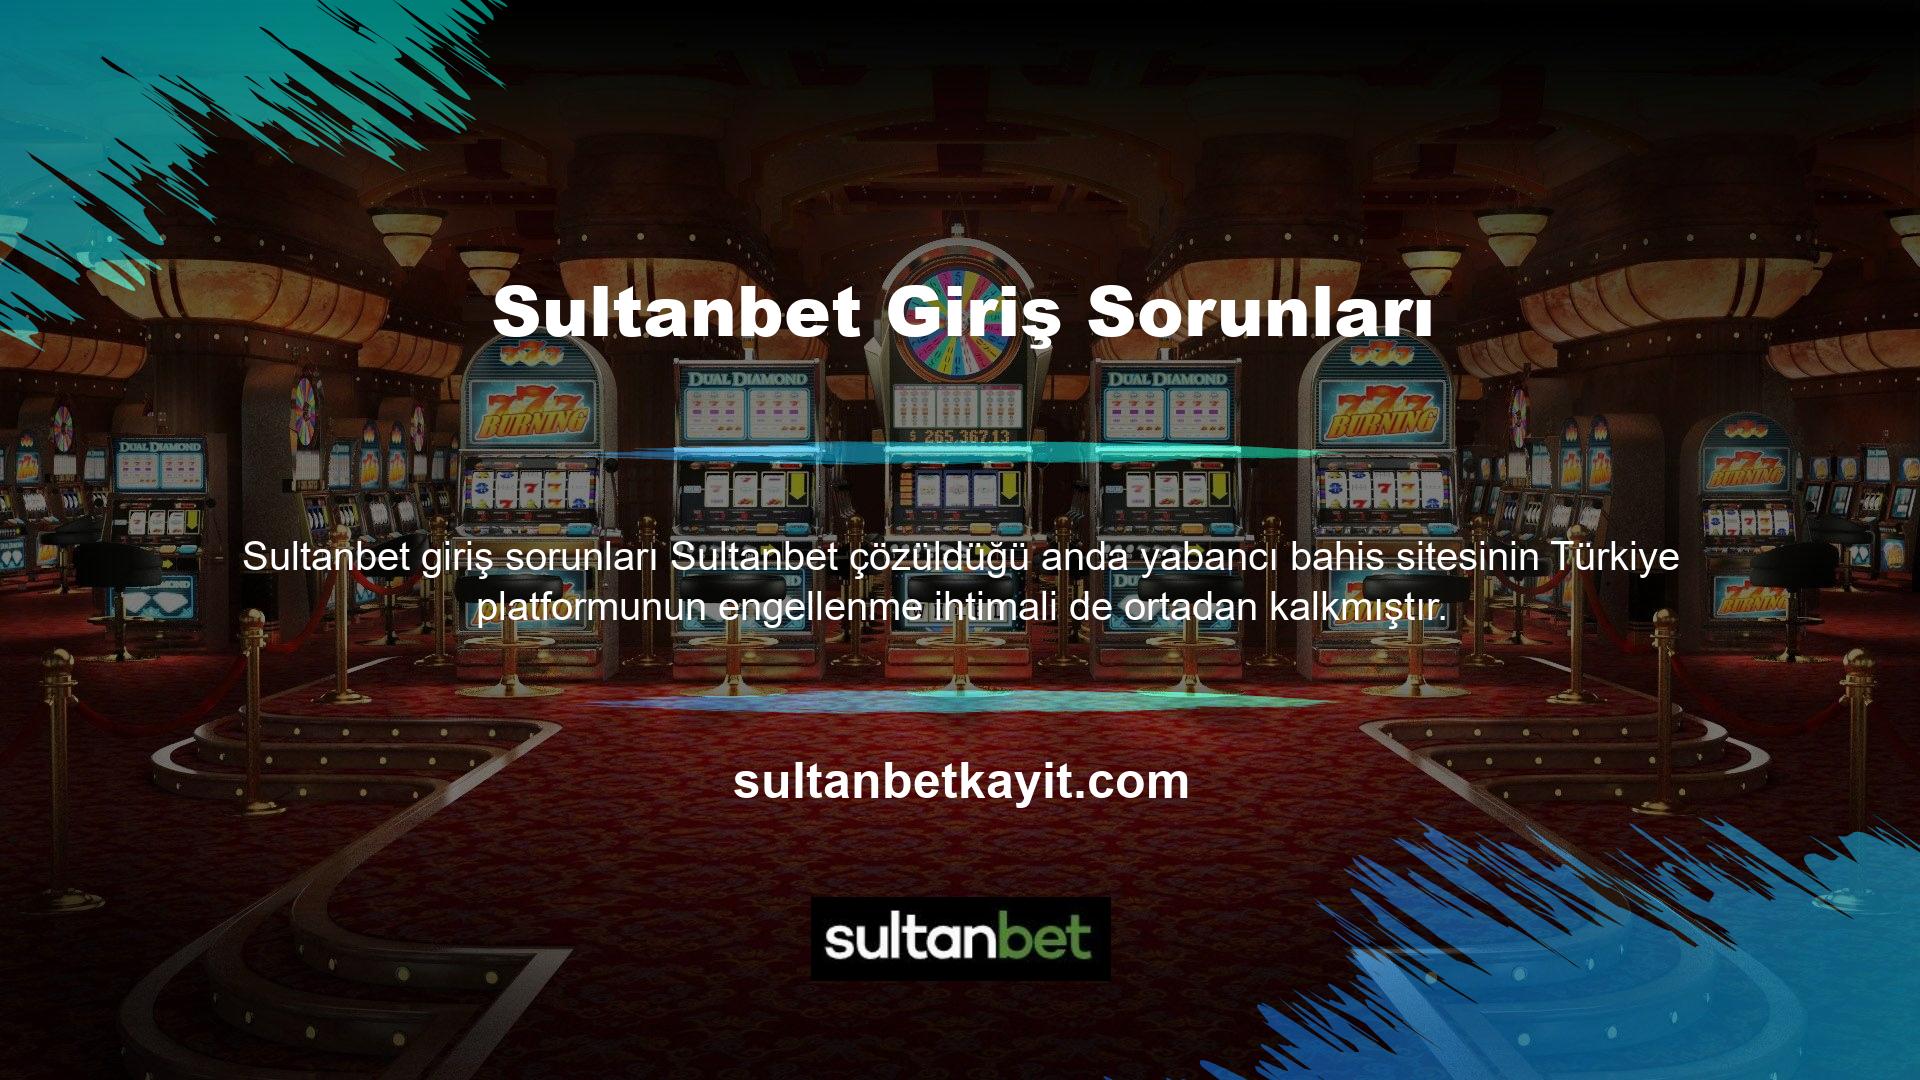 Sultanbet spor bahis sağlayıcısı, slot makinesi siteleri arasında en güvenilirlerden biri olarak kabul ediliyor